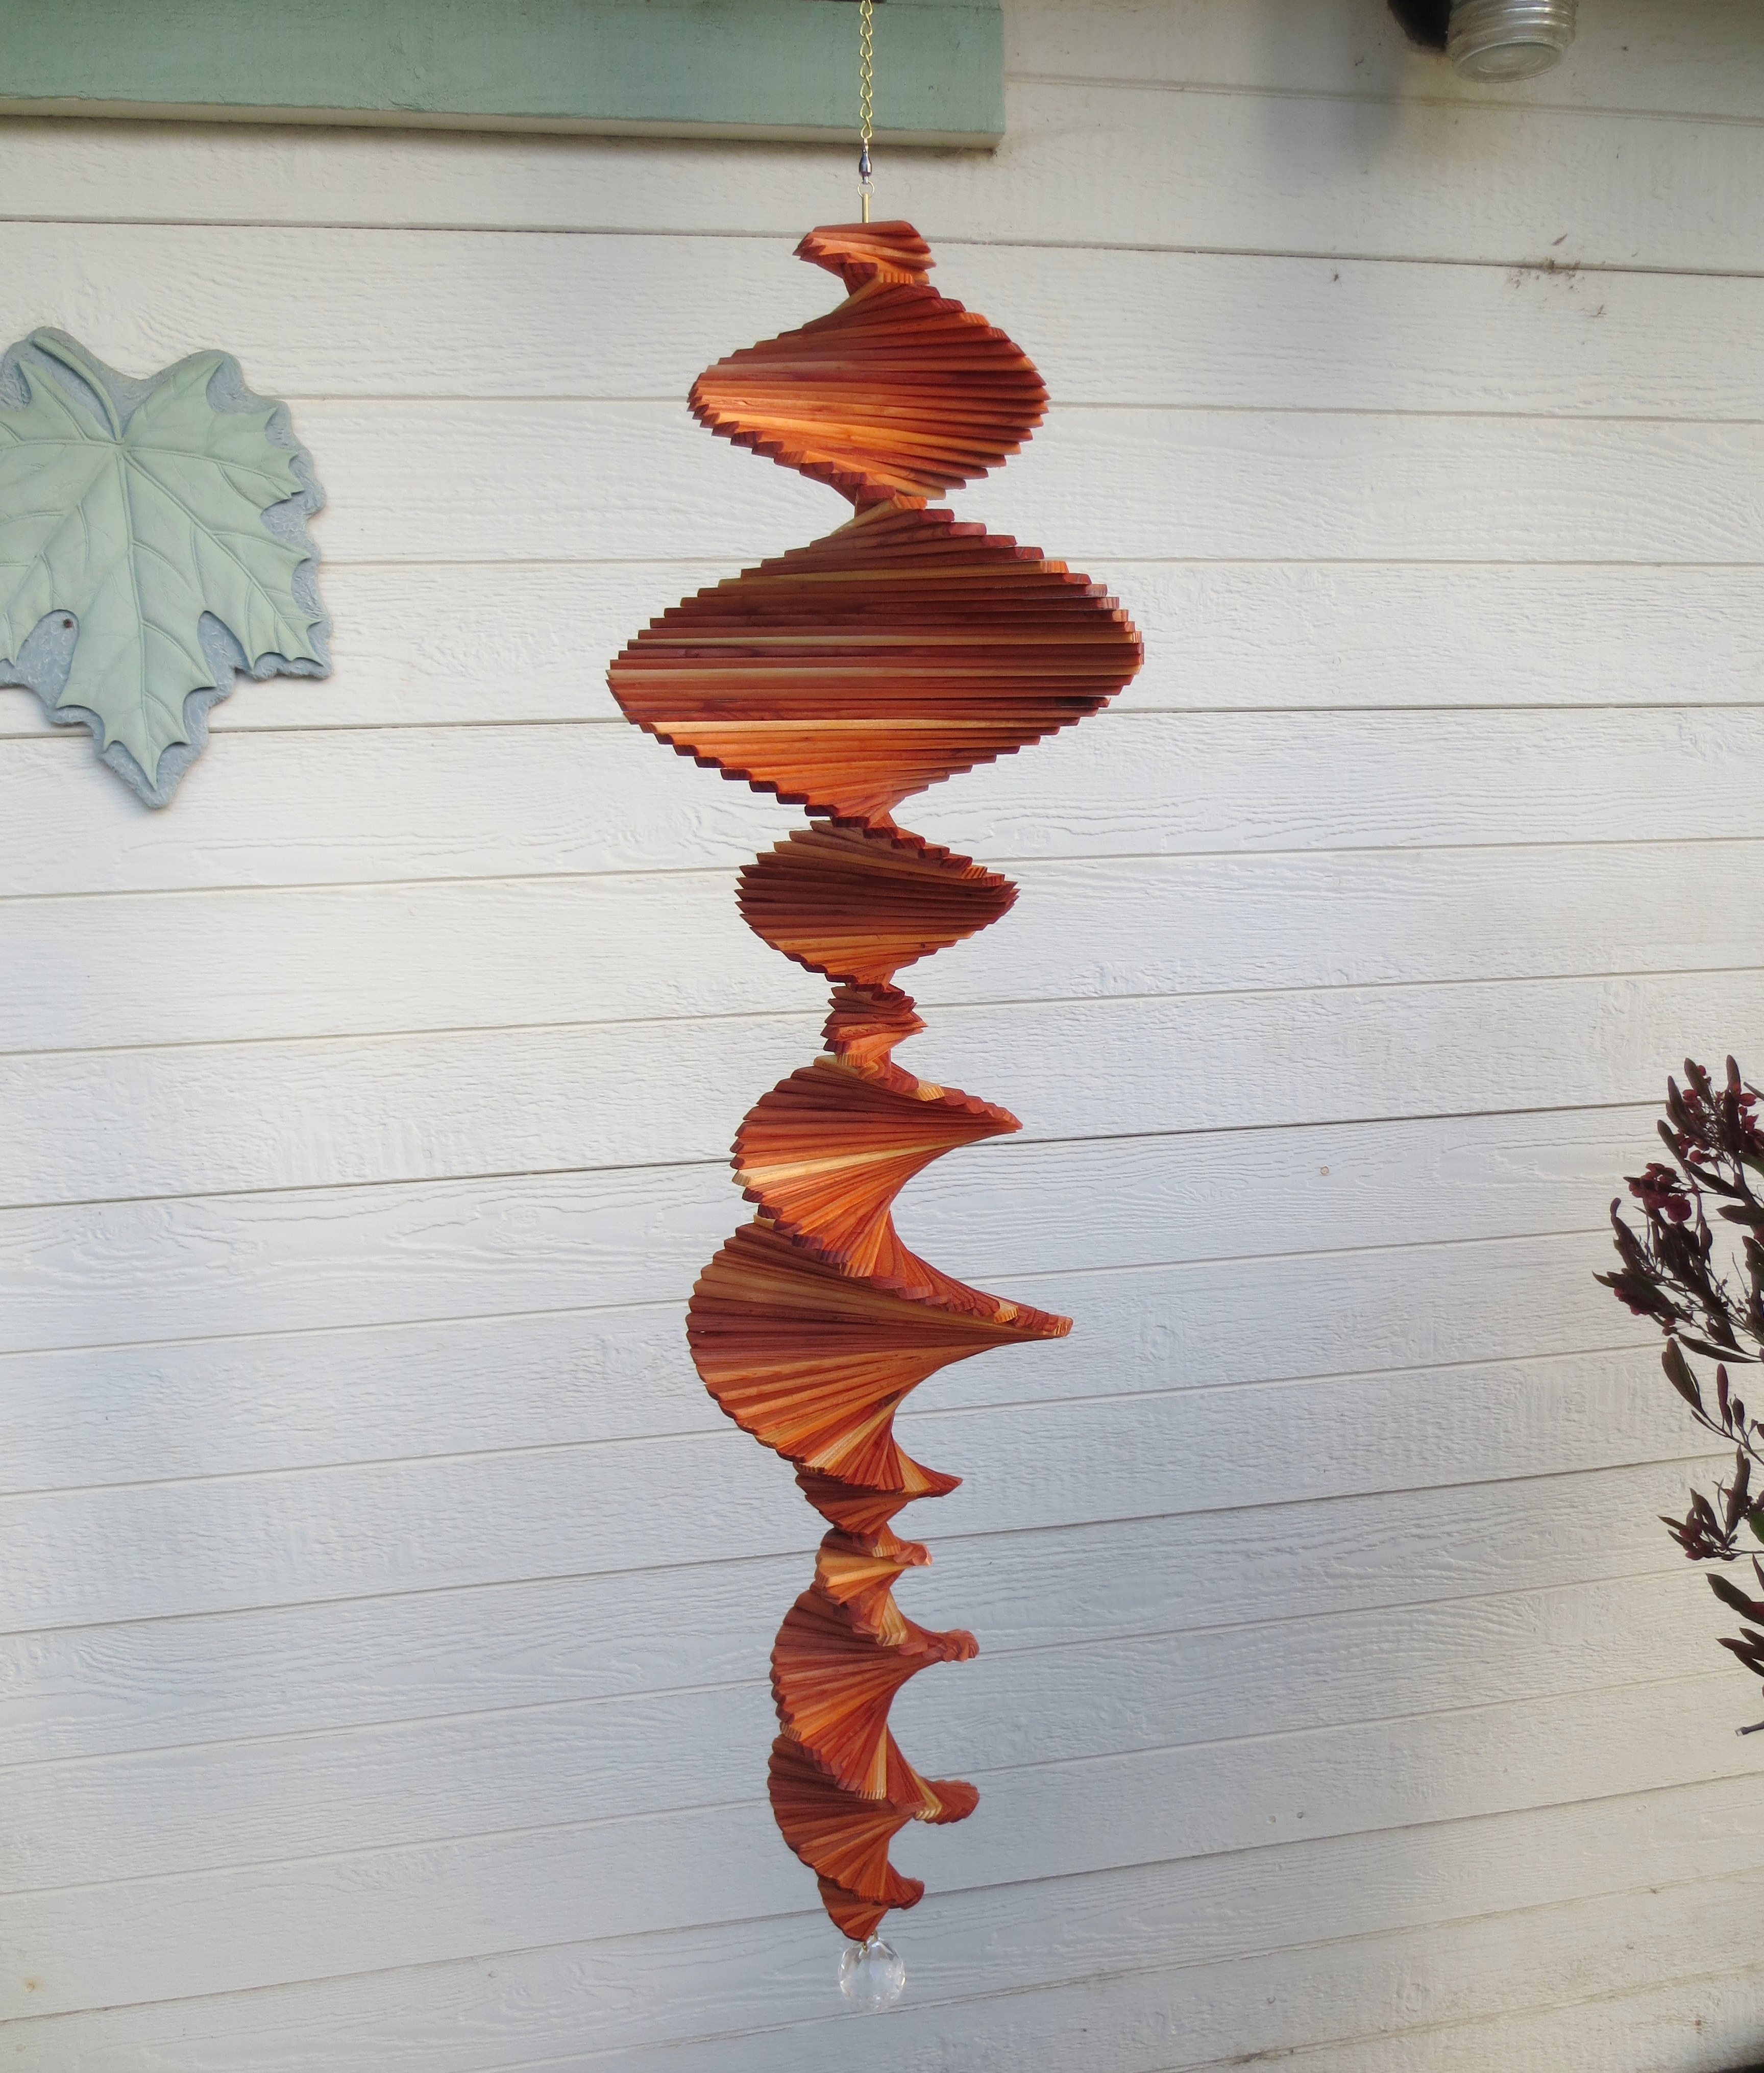 Triple helix Wooden Wind Spinner